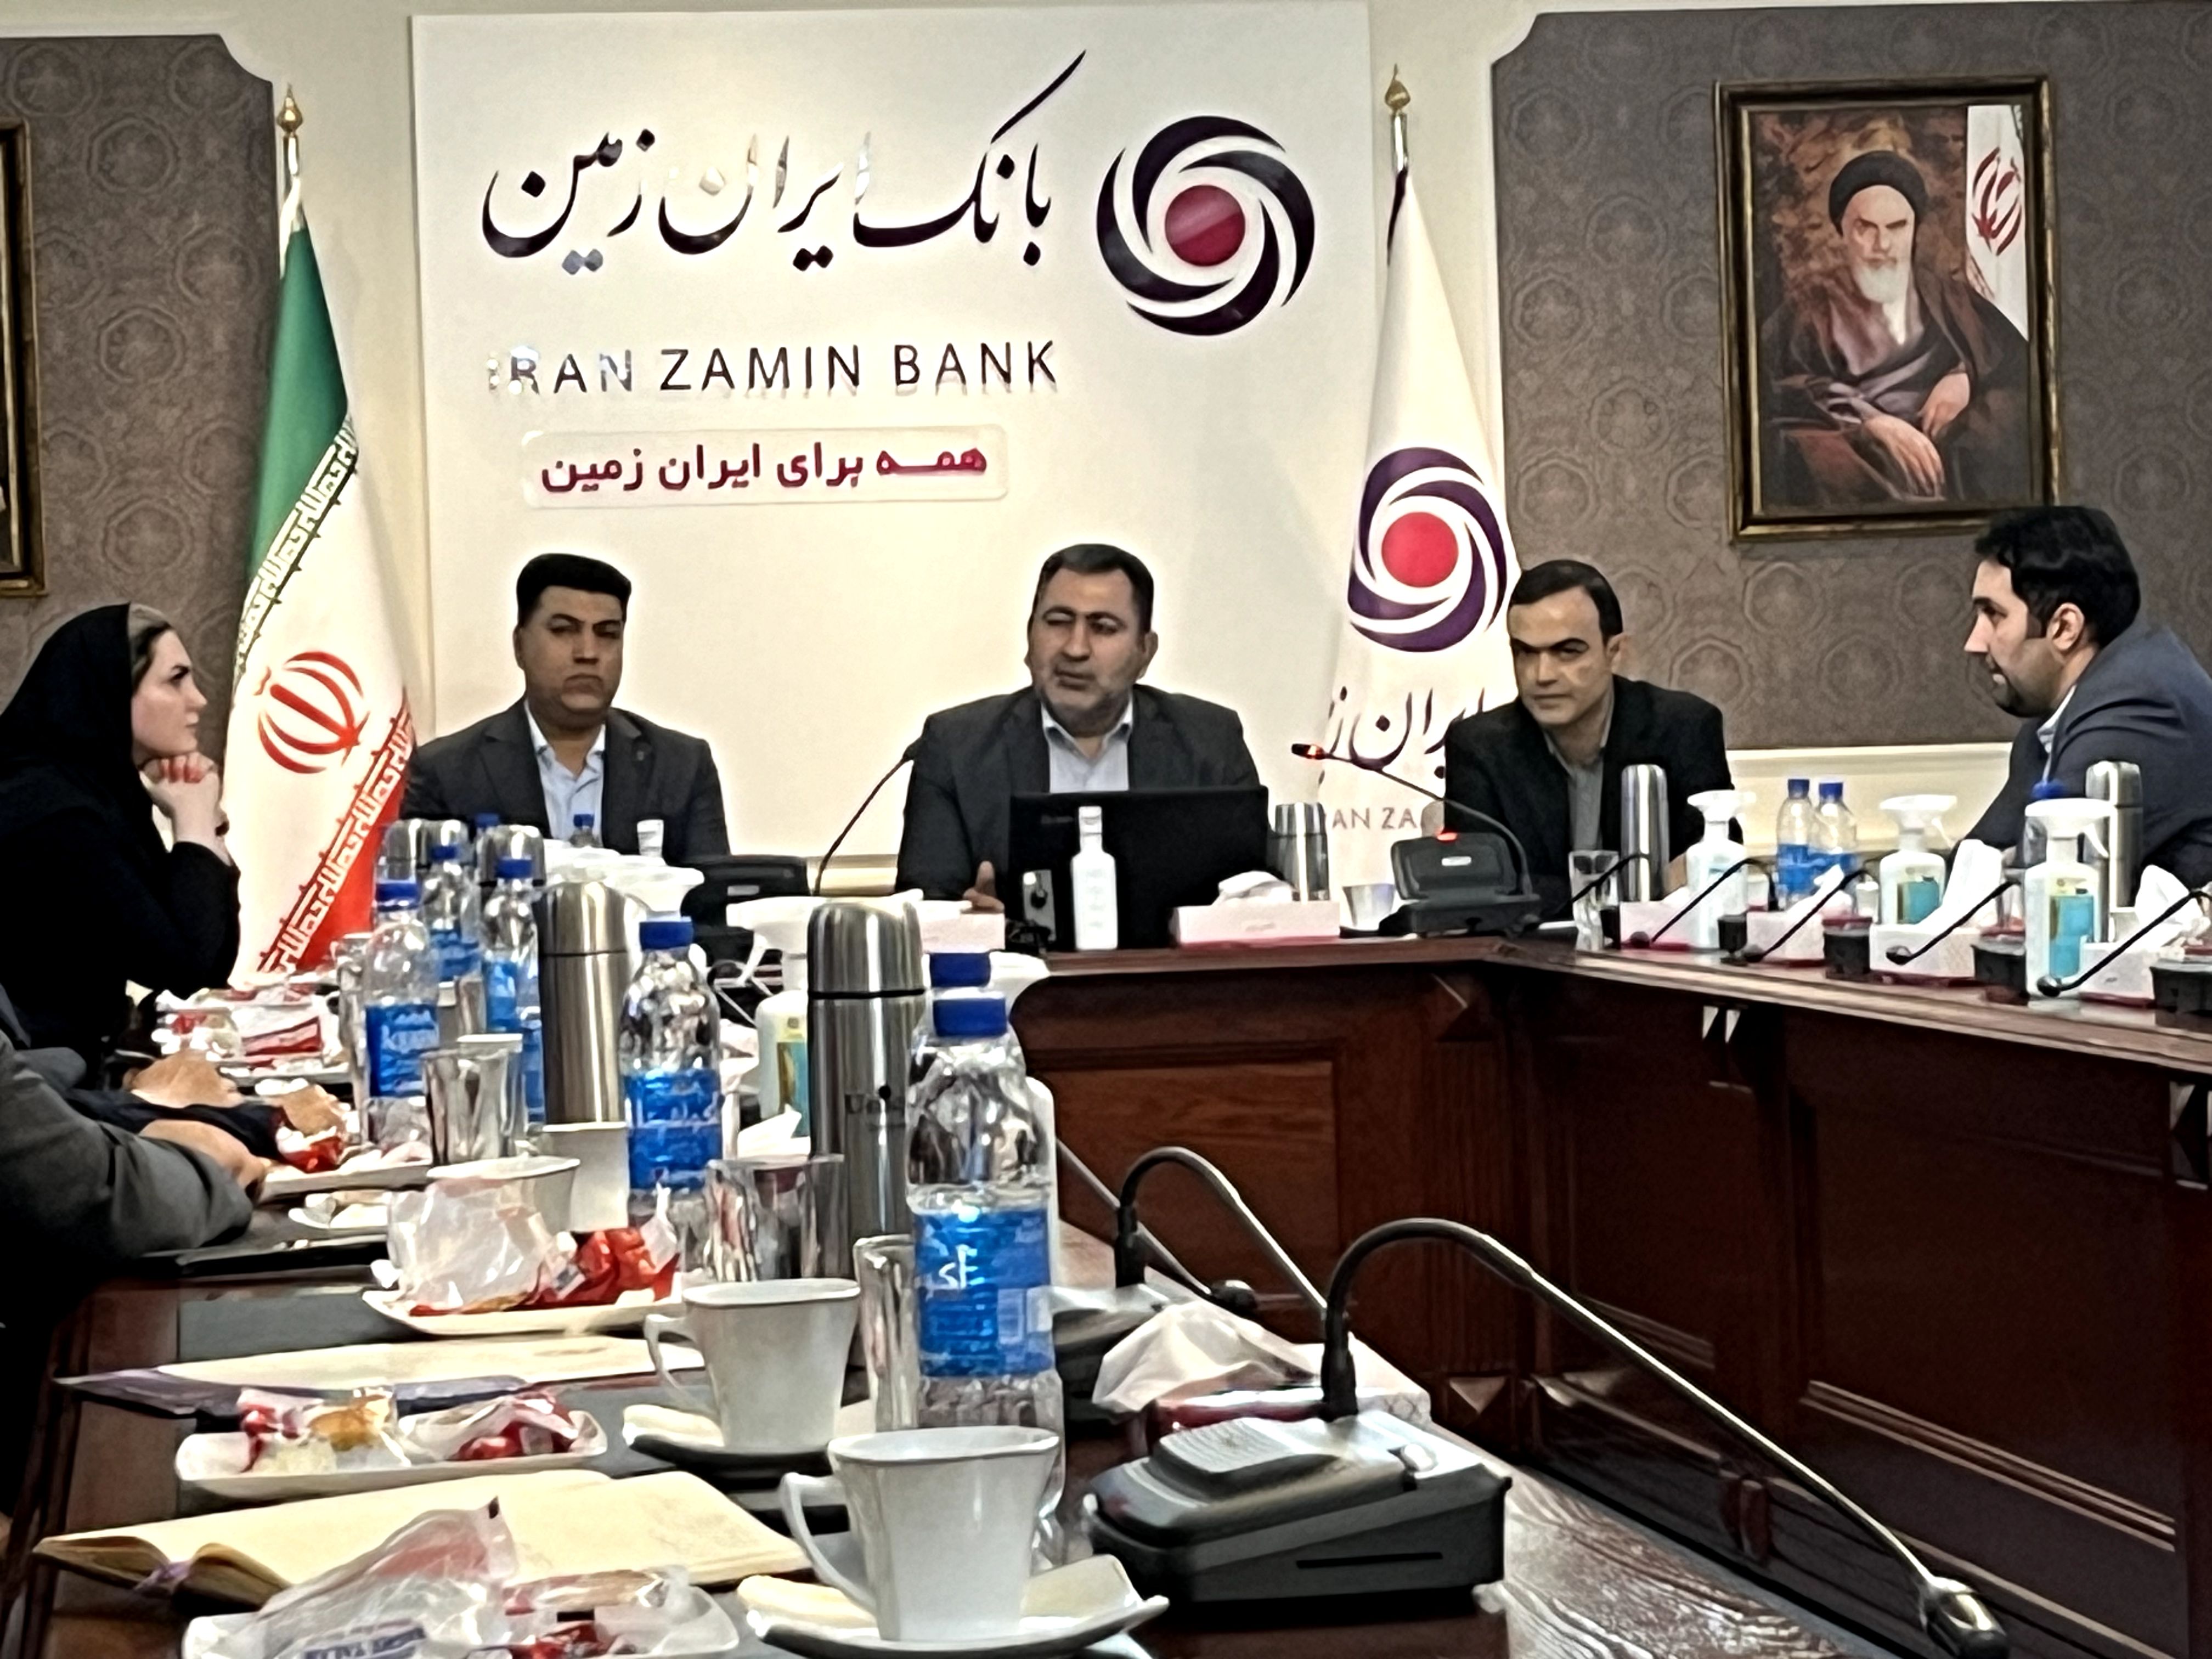 نتایج درخشان فعالیت تیمی کارکنان بانک ایران زمین